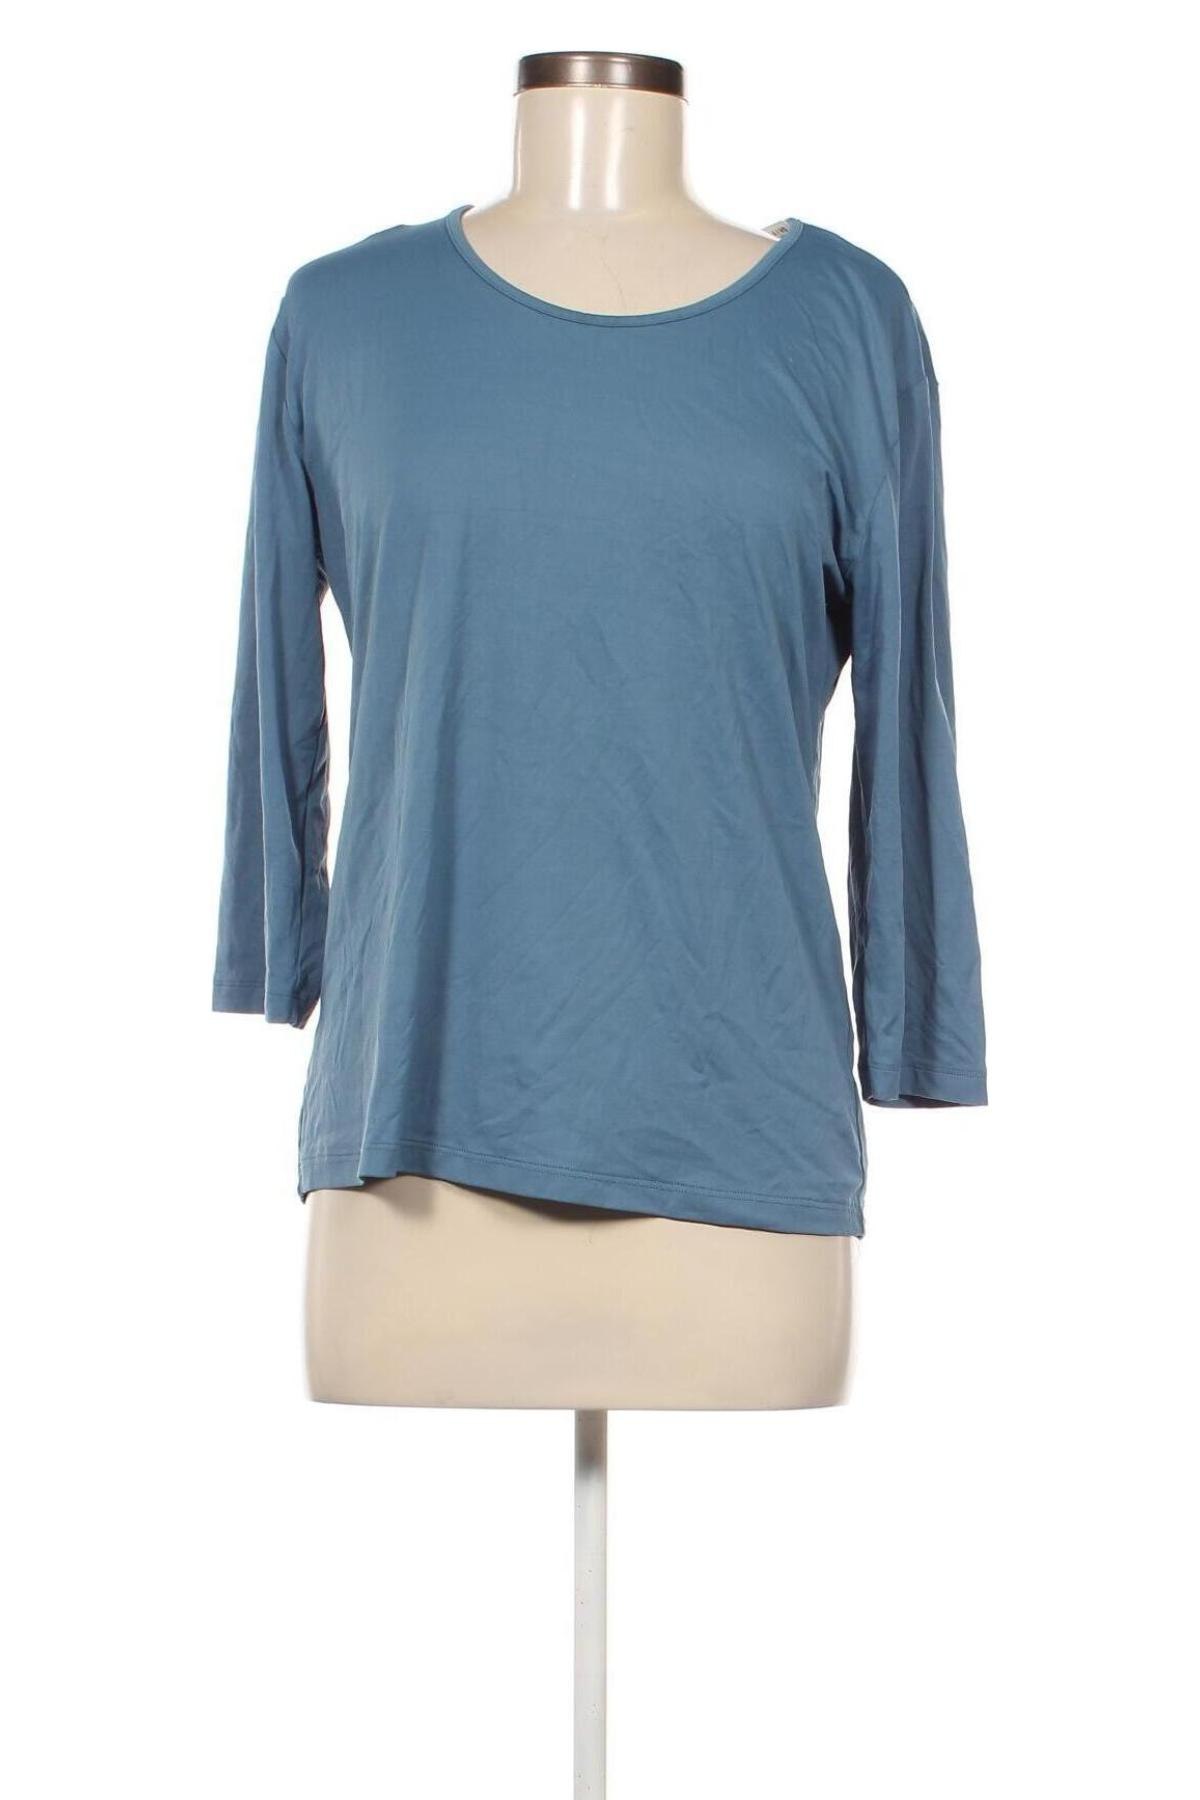 Γυναικεία μπλούζα Port Louis, Μέγεθος L, Χρώμα Μπλέ, Τιμή 4,70 €